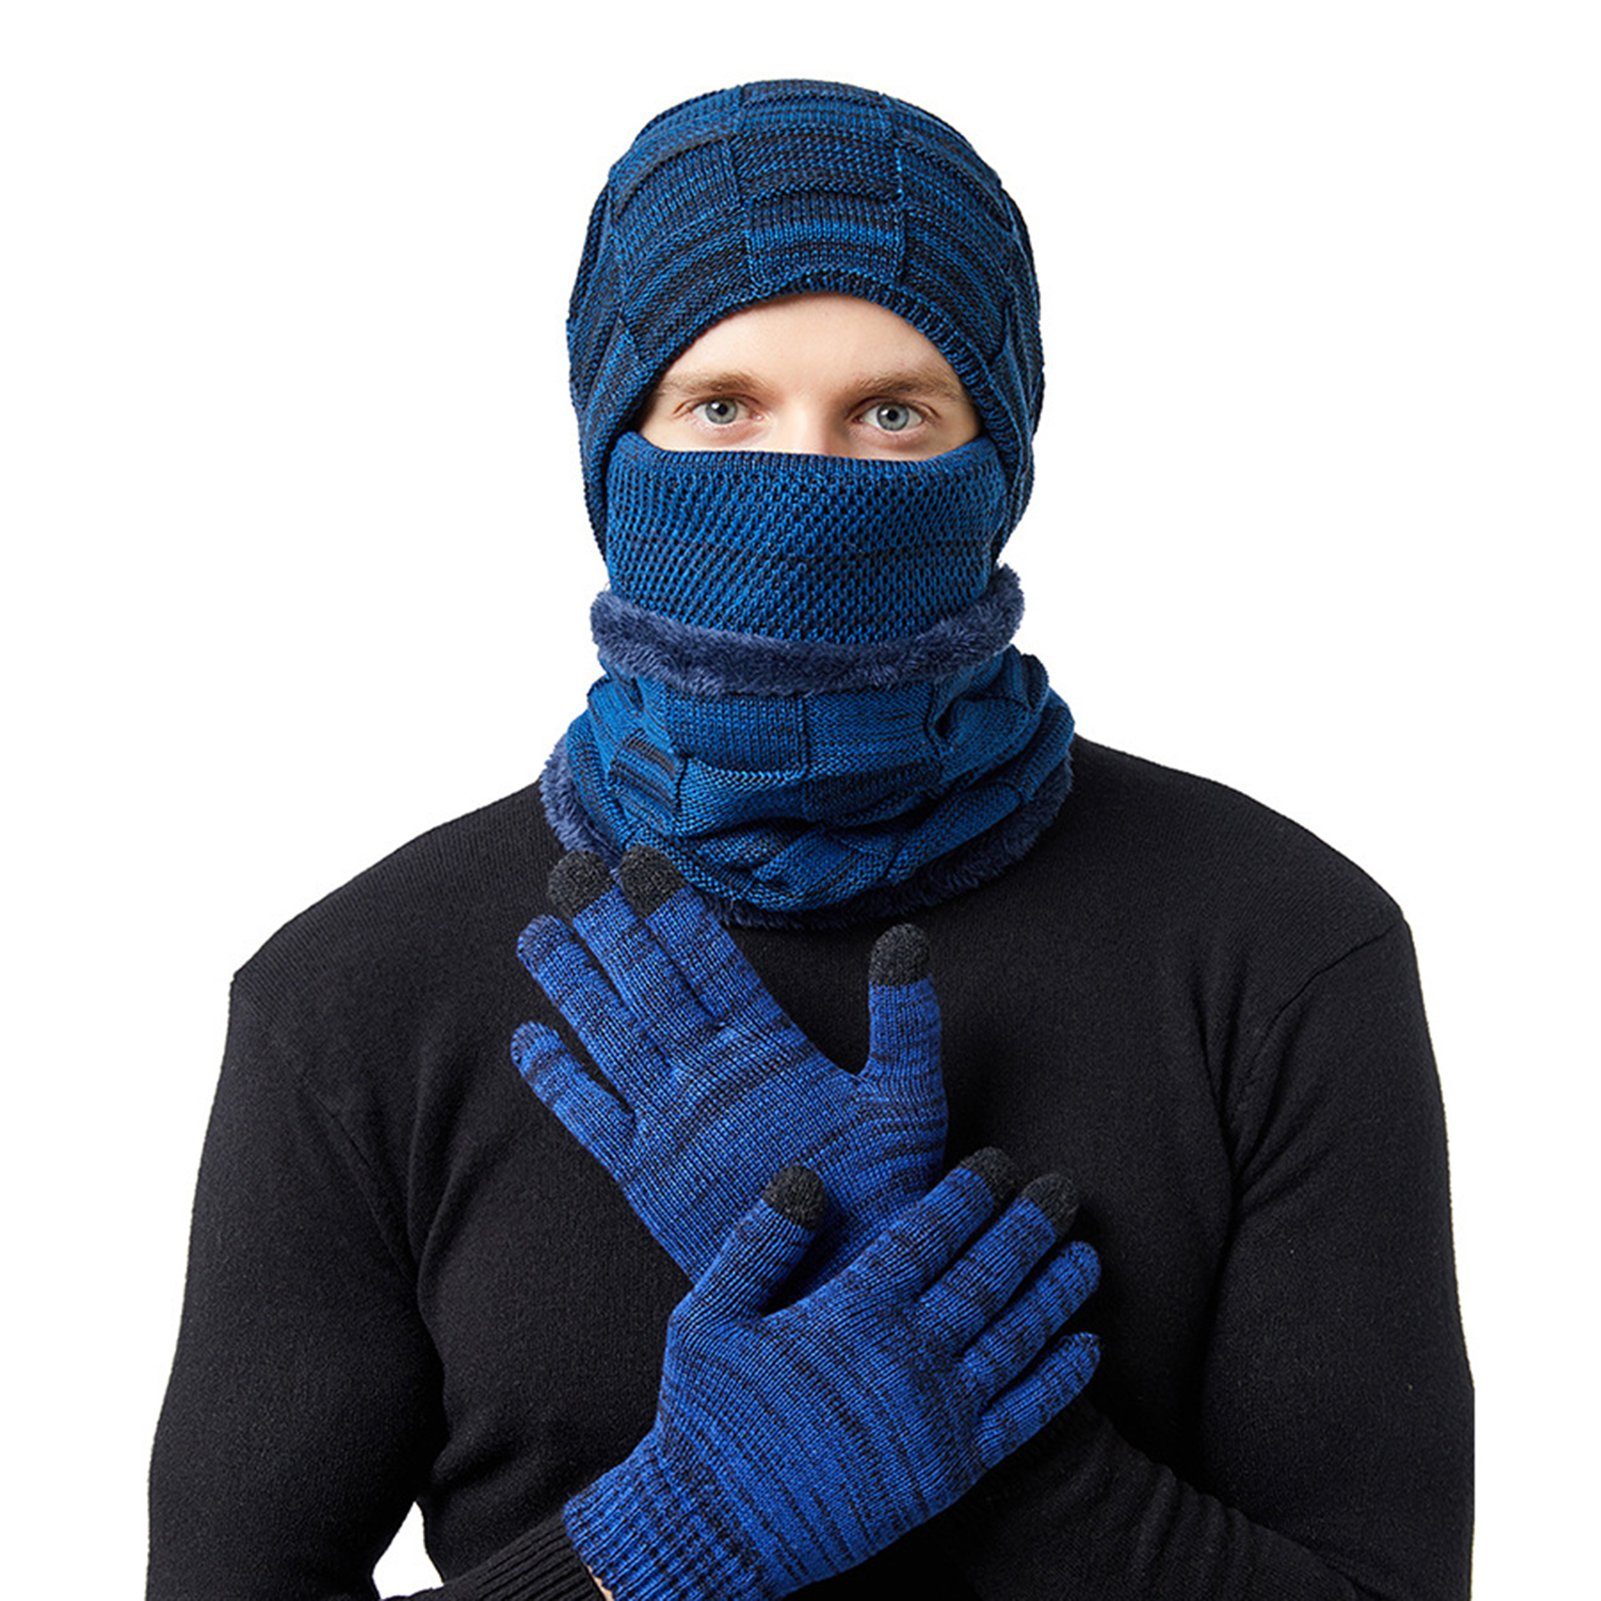 Rutaqian Mütze & Schal Winter Beanie Hut, Schal, Handschuhe 4 in 1 Warmes Zubehör Kit 4 in 1 Hut, Schal, Gesichtsabdeckung, 1 Paar Touchscreen Handschuhe Blau